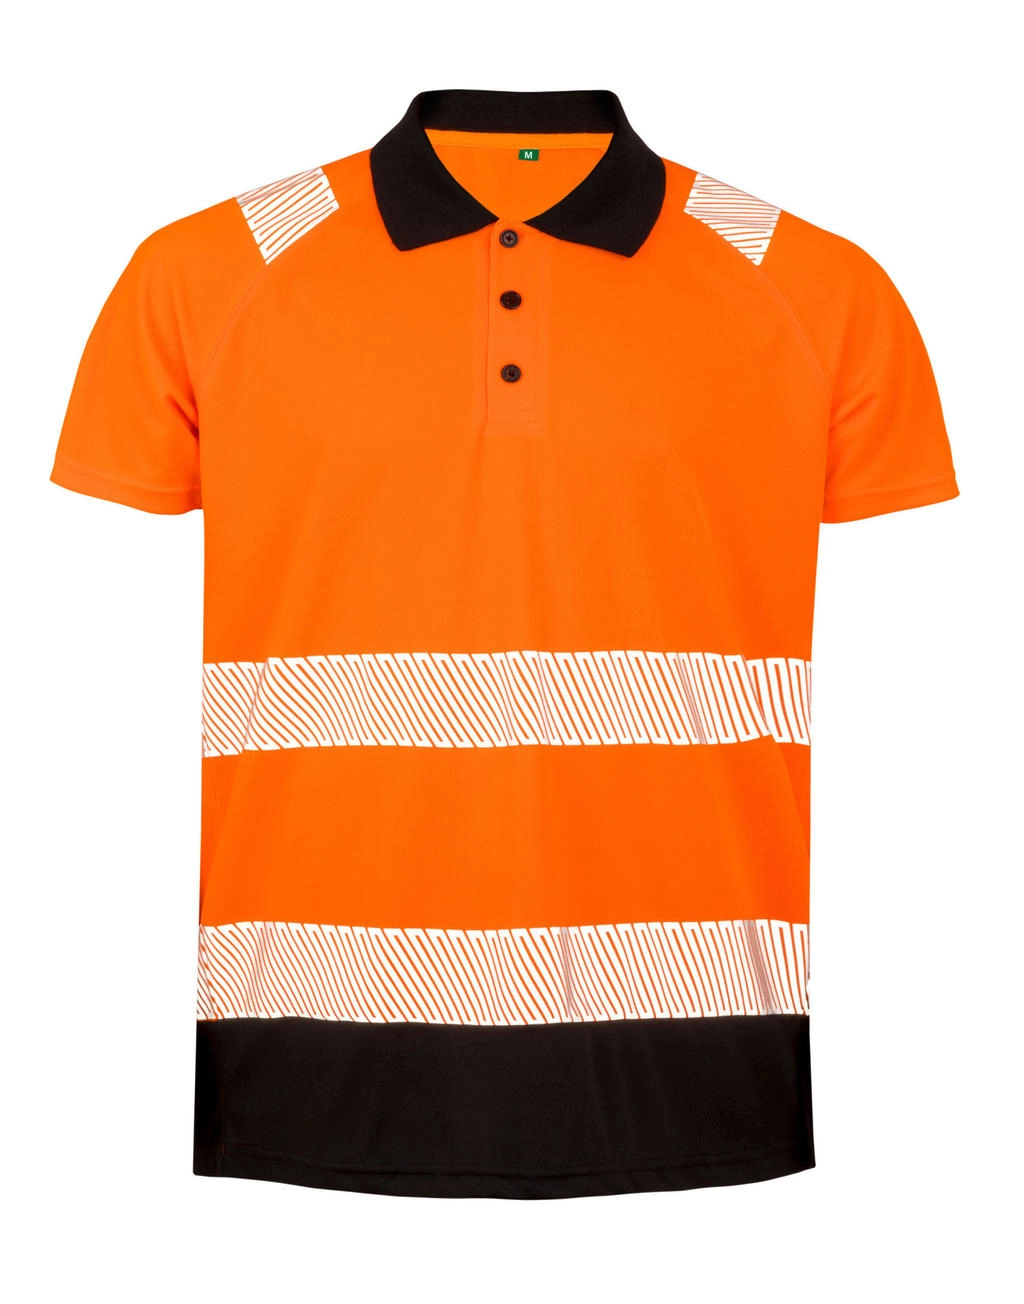 Recycled Safety Polo Shirt zum Besticken und Bedrucken in der Farbe Fluorescent Orange mit Ihren Logo, Schriftzug oder Motiv.